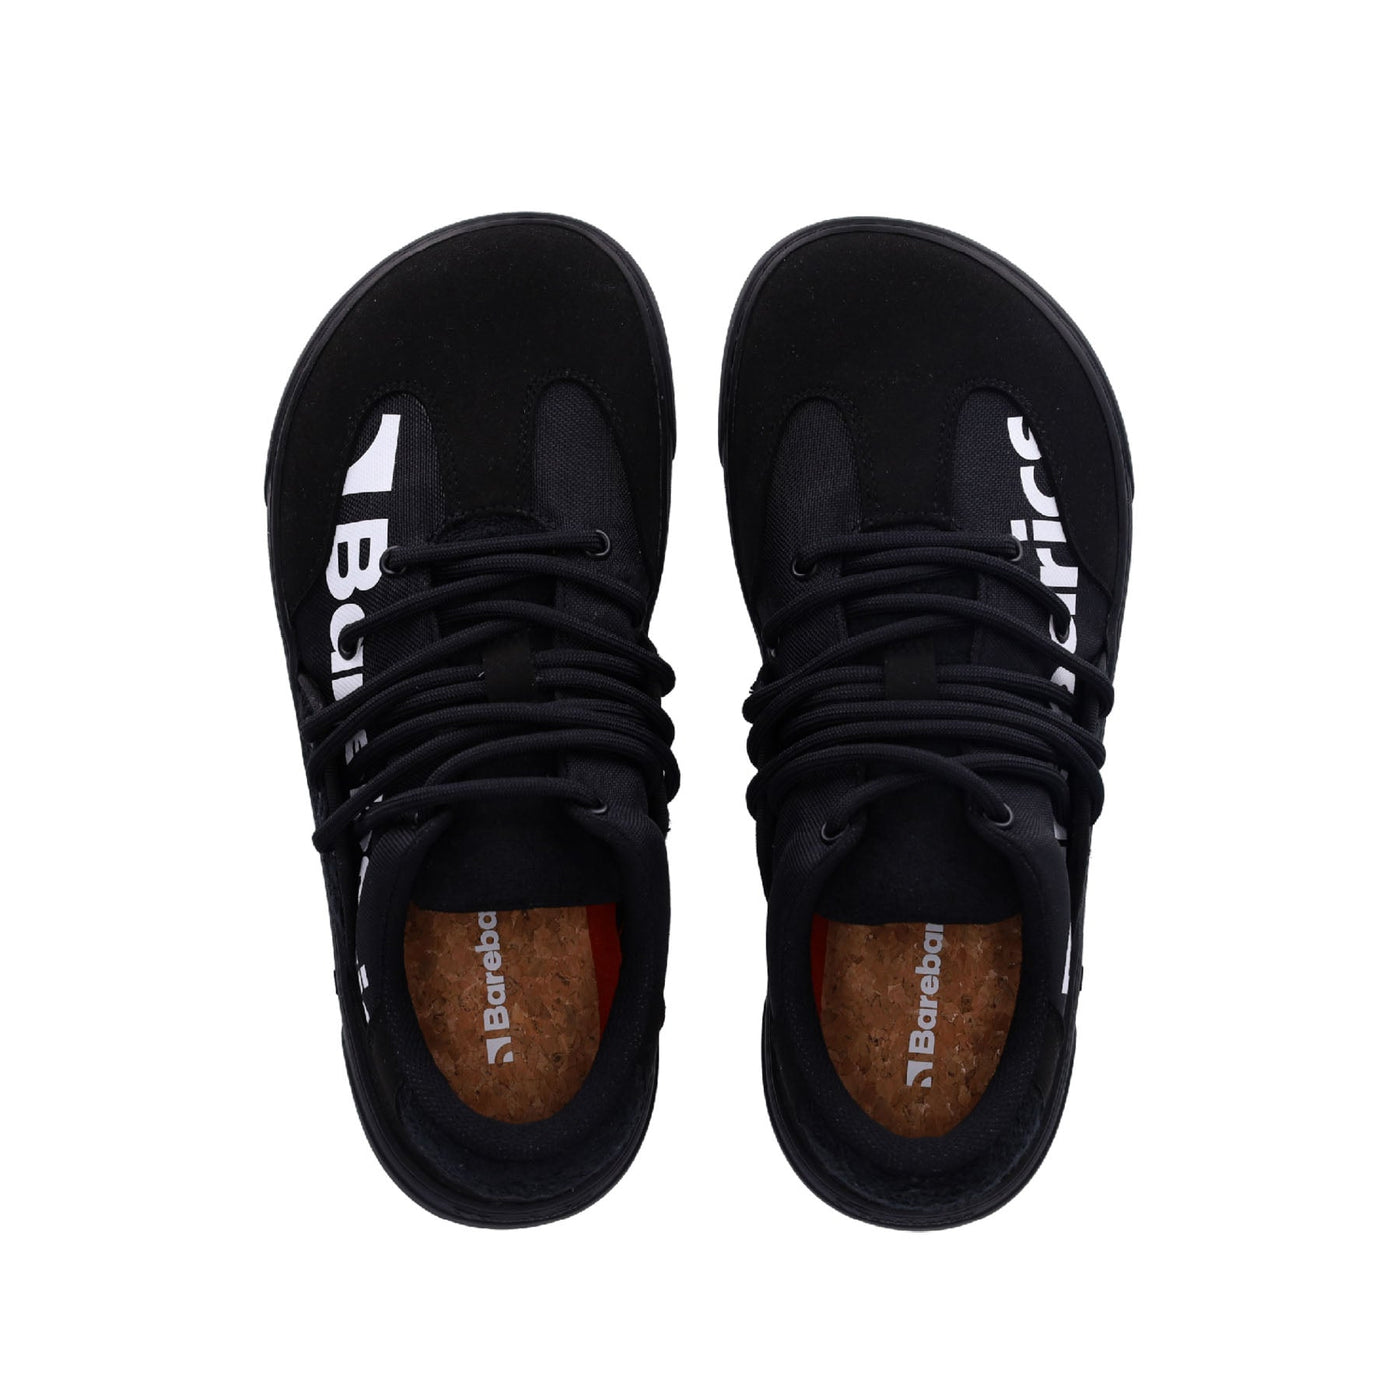 Barebarics Vibe Sneaker - Black 44 - Like New